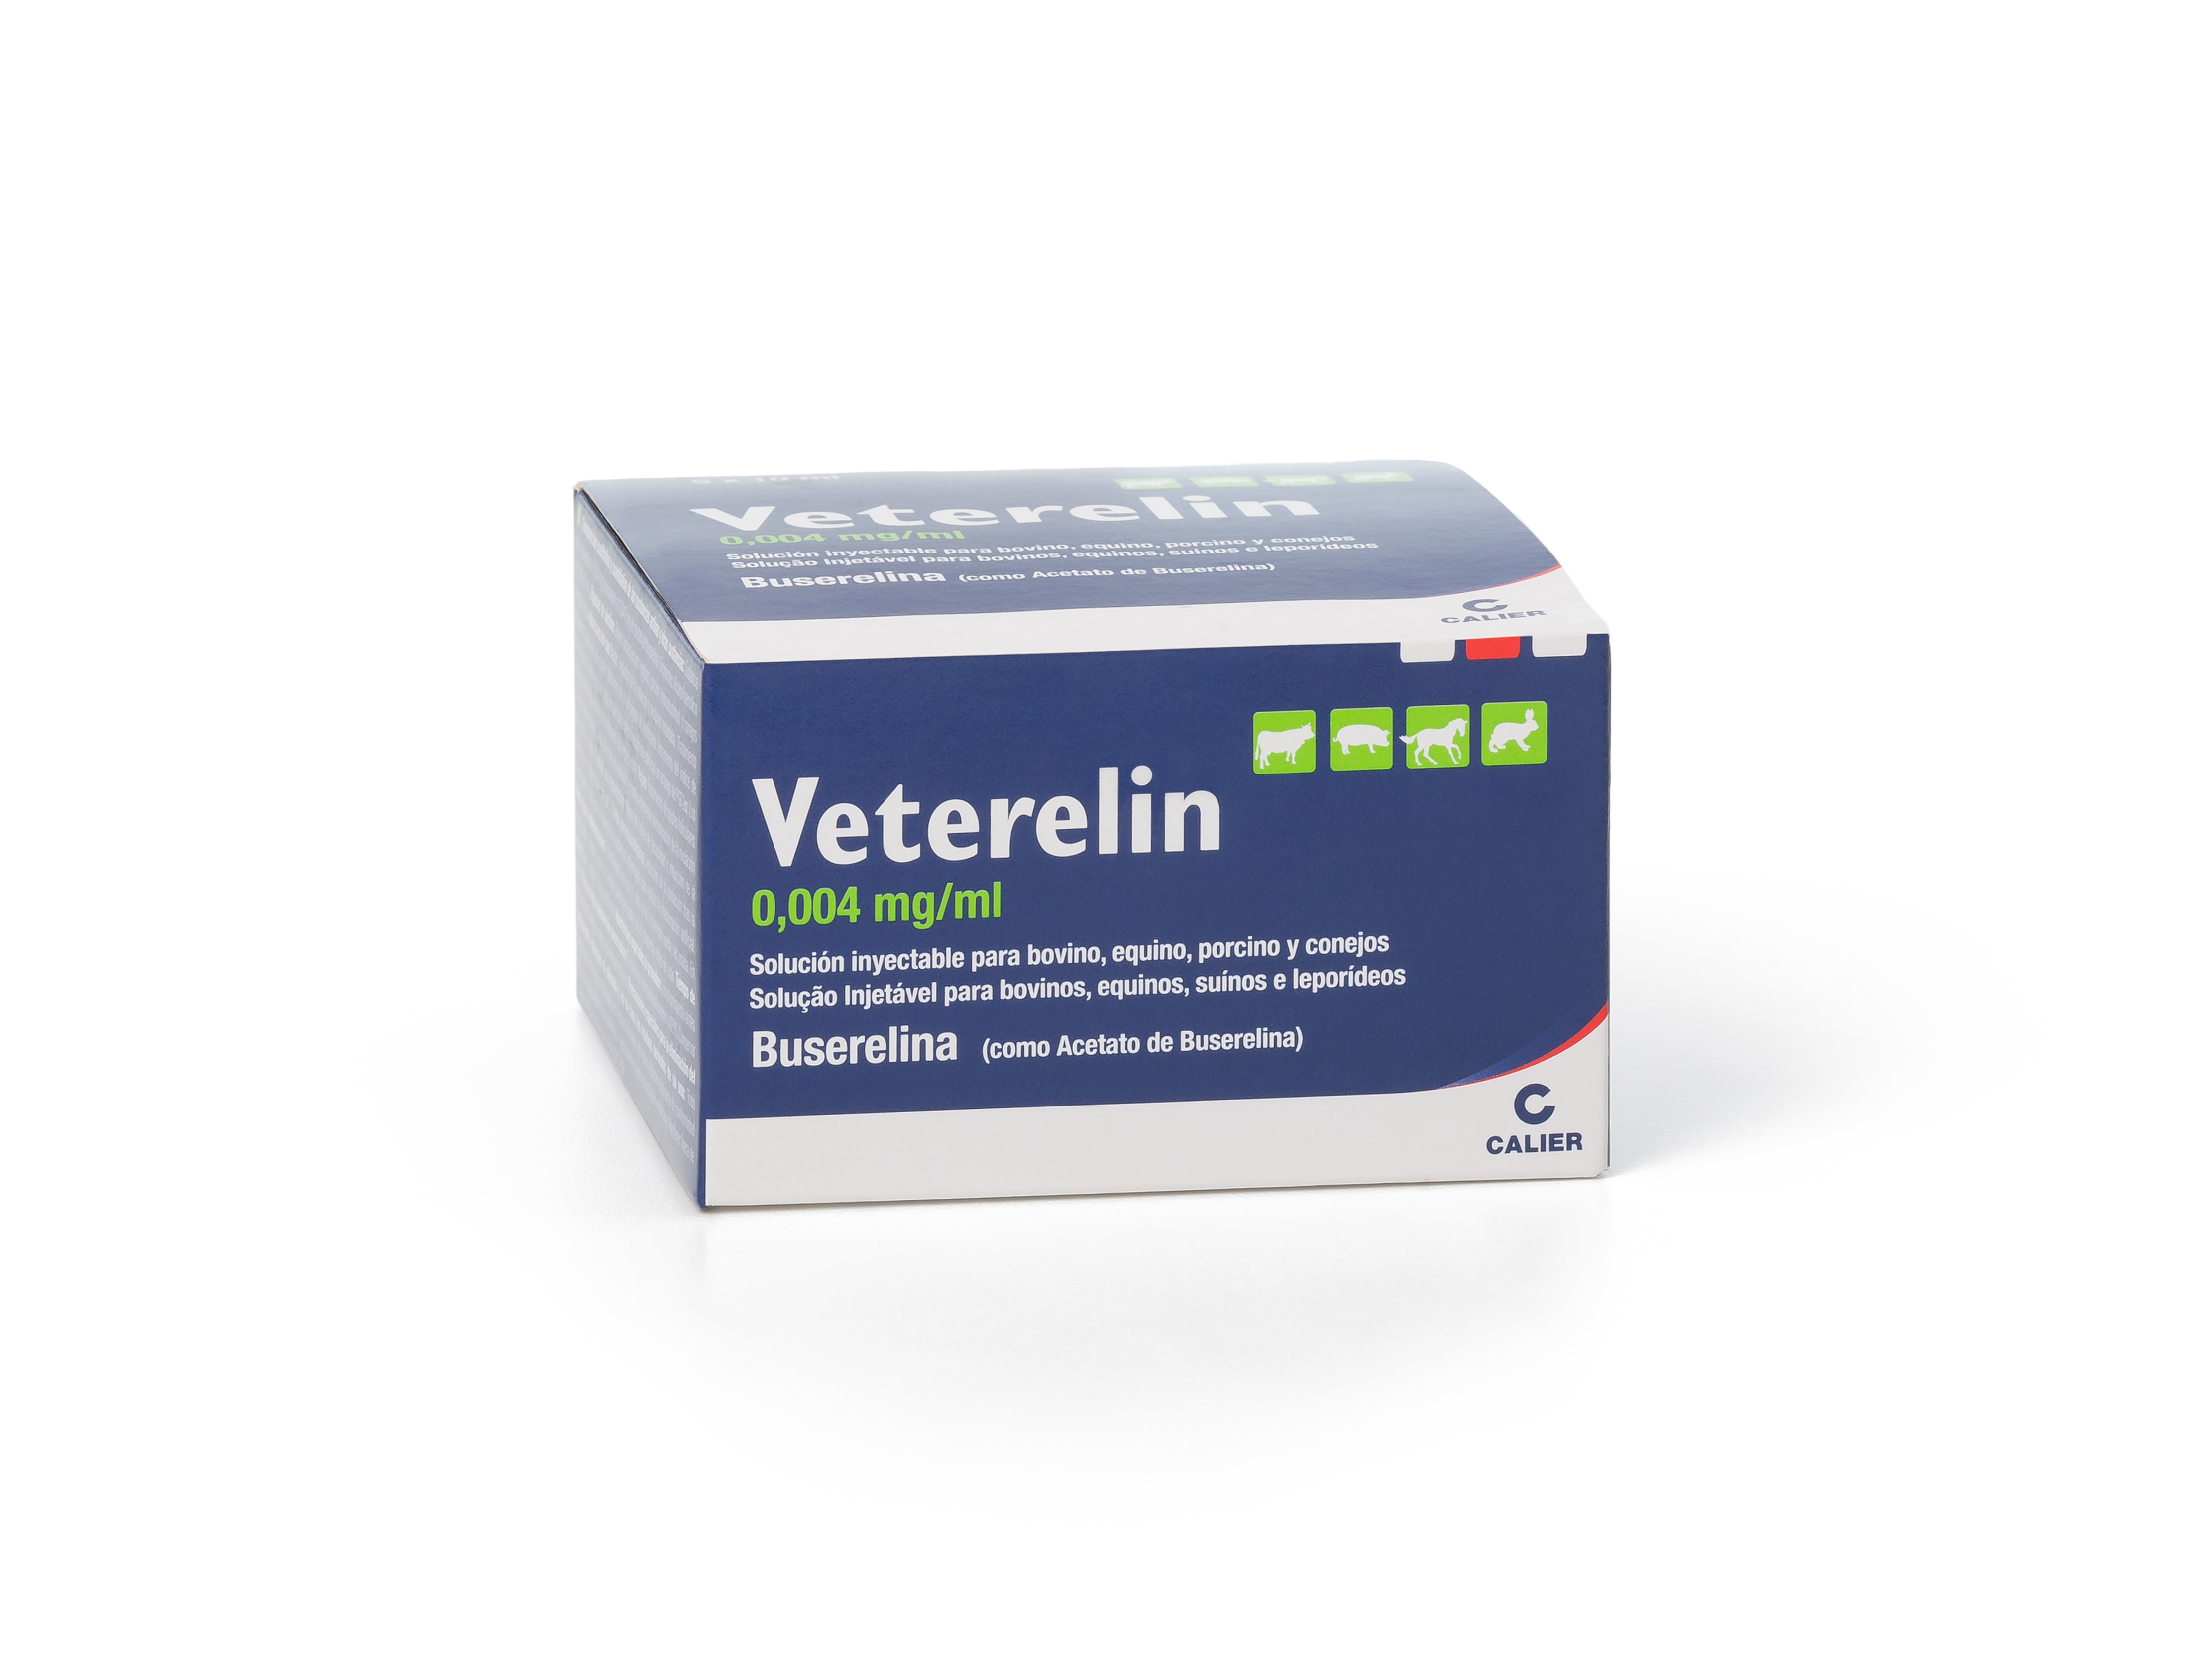 Veterelin